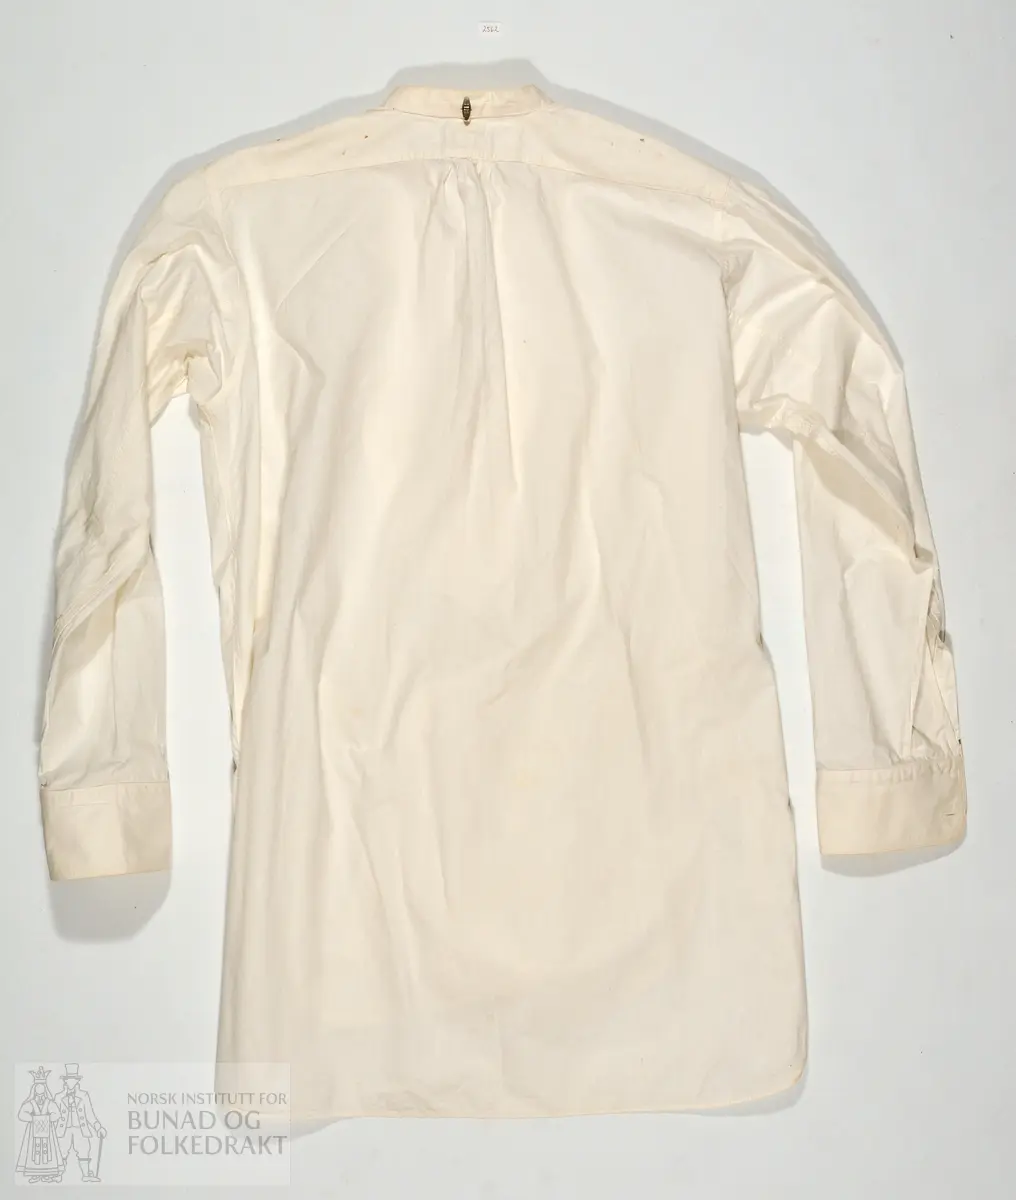 Skjorte kjøpt på butikk, med merkelapp i nakken AL 1898. Stiva skjortebryst. Maskinsydd. 85cm midt bak og ned.